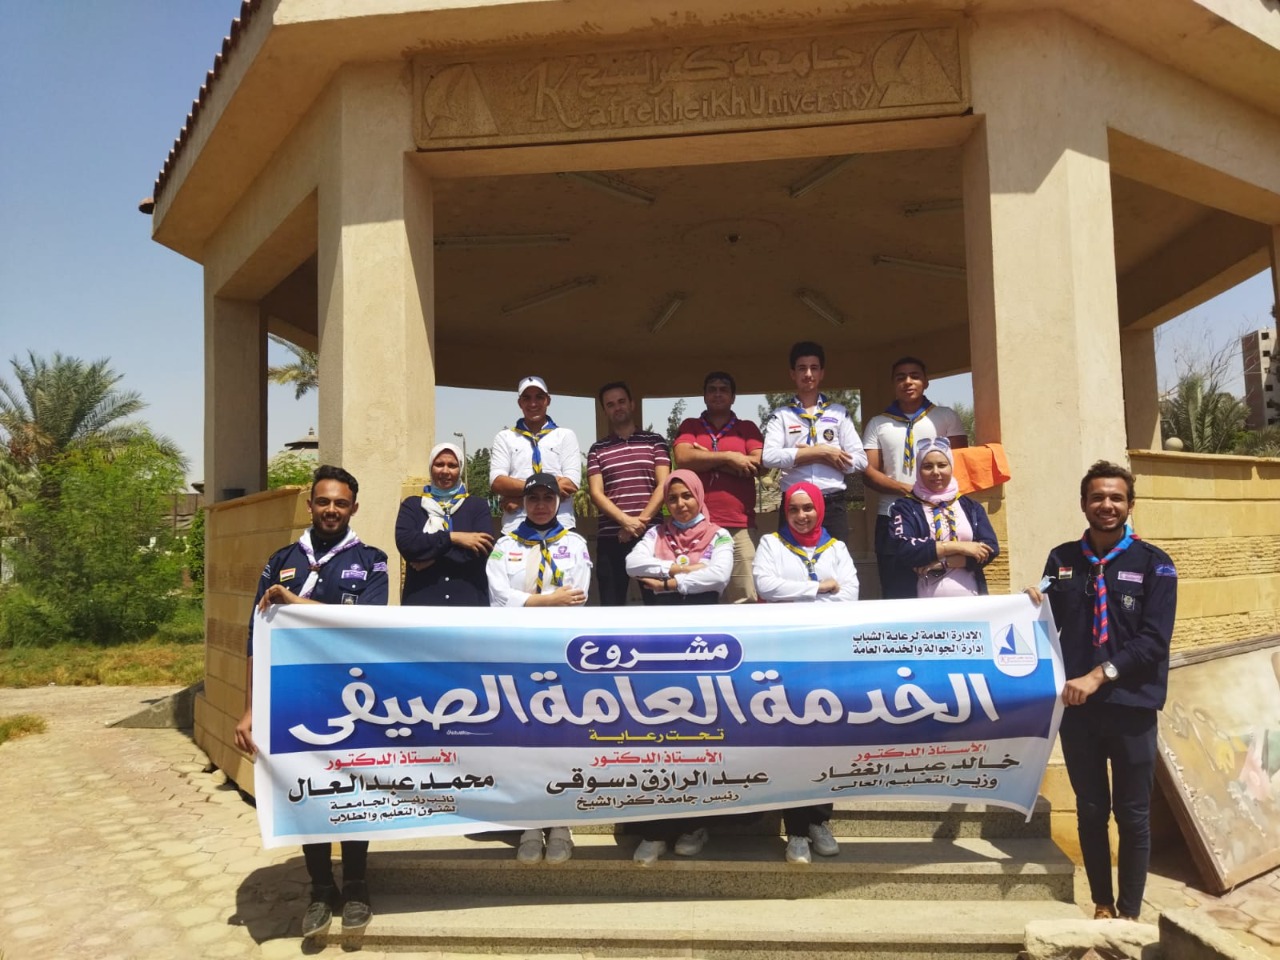 جوالة جامعة كفر الشيخ تنفذ خطة النشاط الصيفي وتنظم معسكر للخدمة العامة